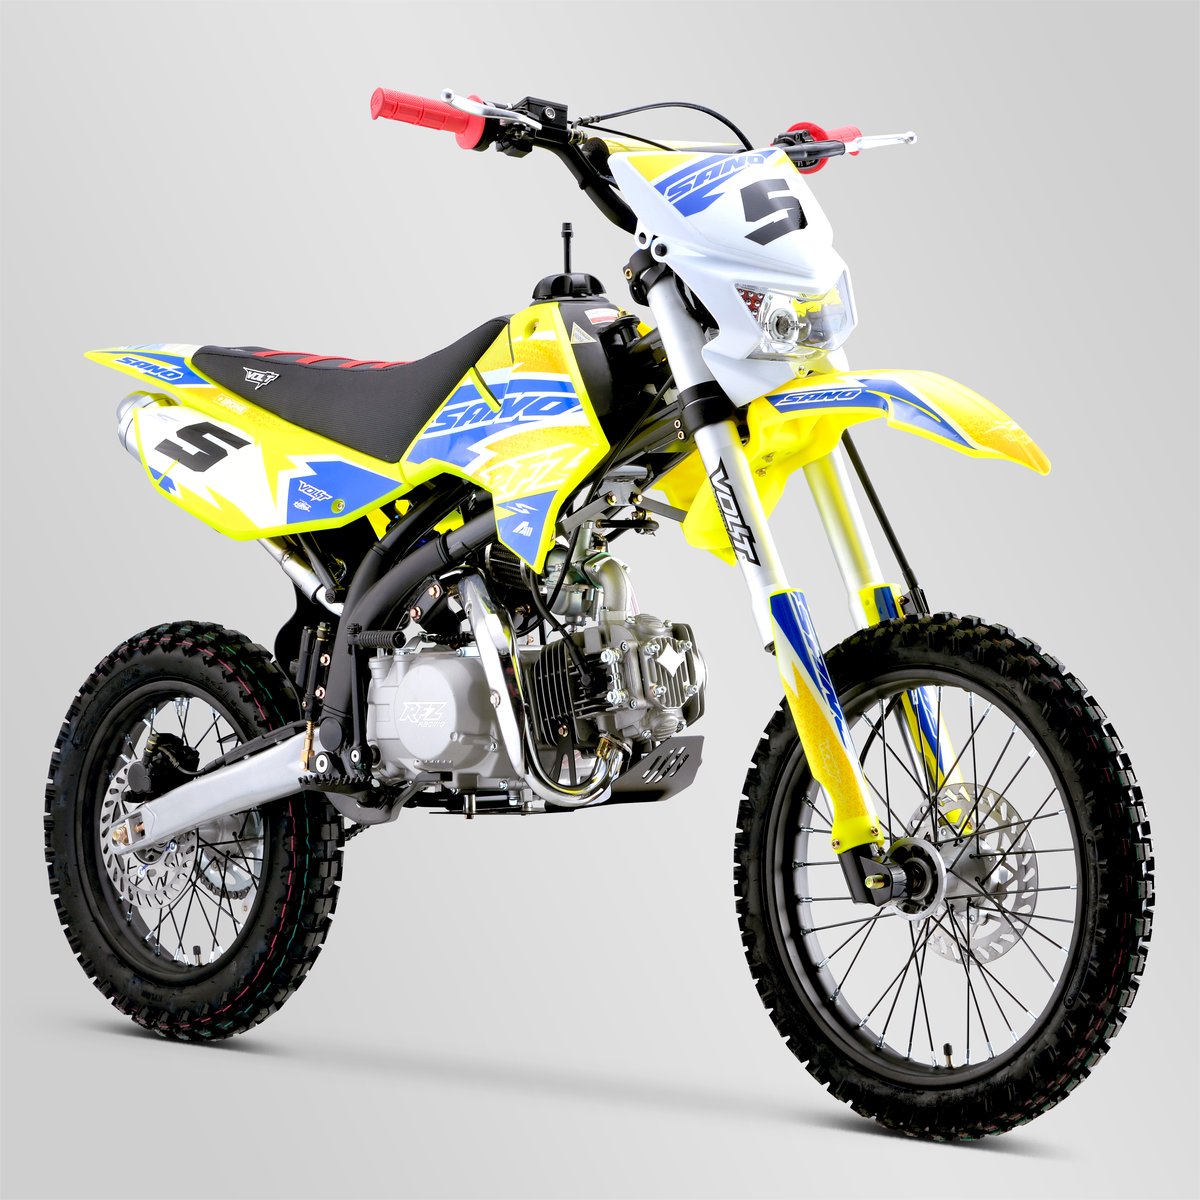 minicross-apollo-rfz-enduro-150-14-17-2021-6-bleu